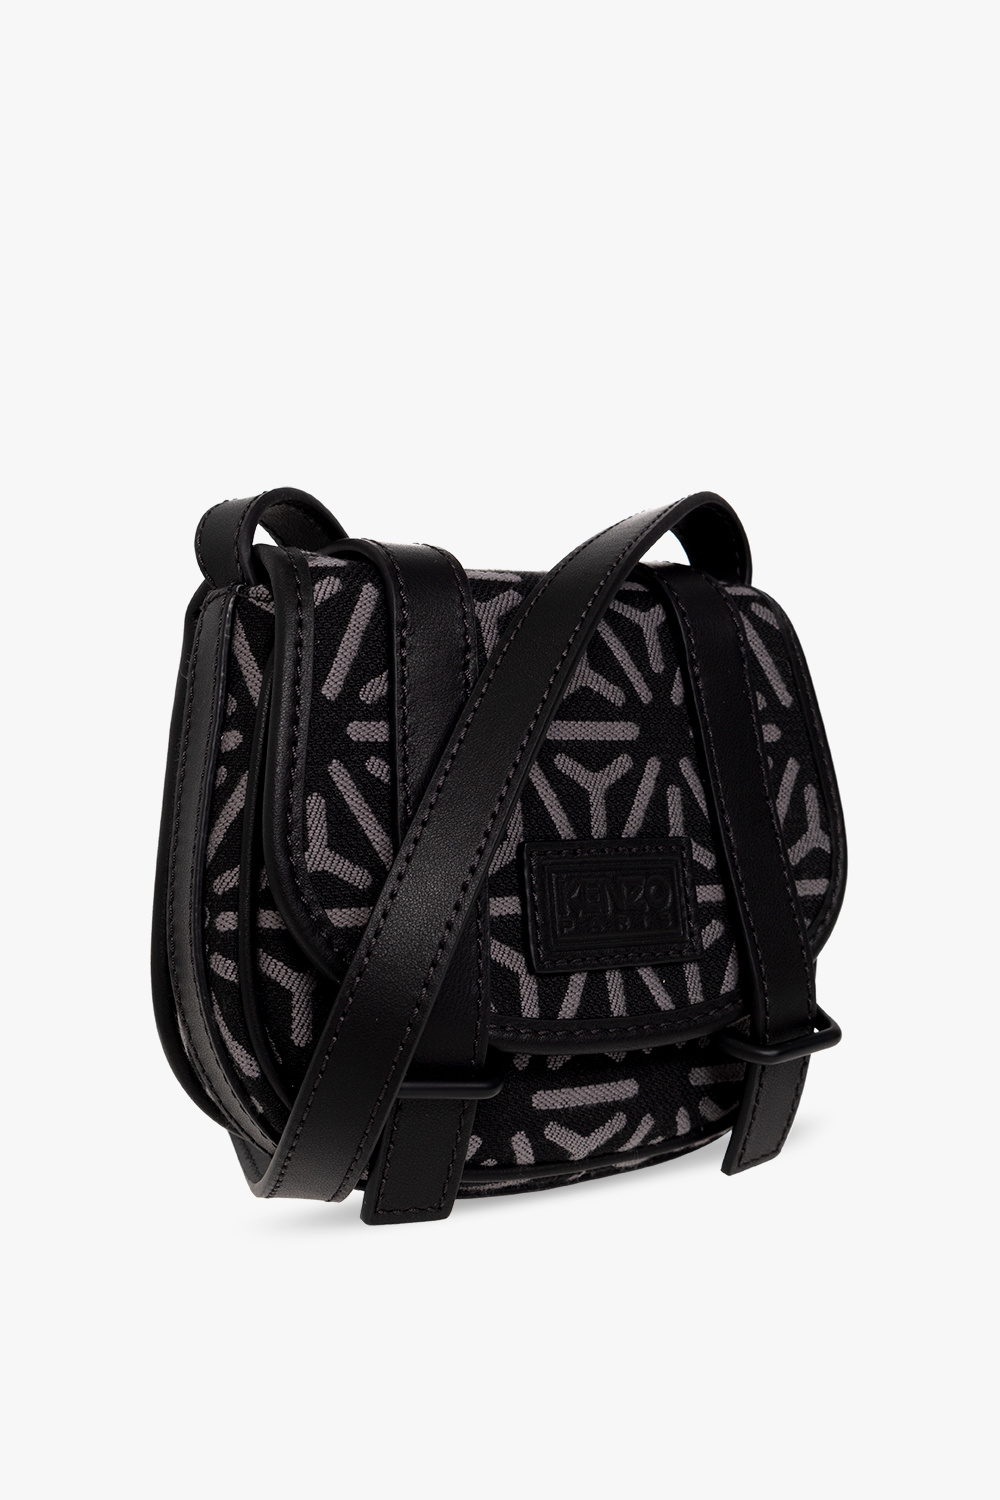 Kenzo Shoulder Travel bag